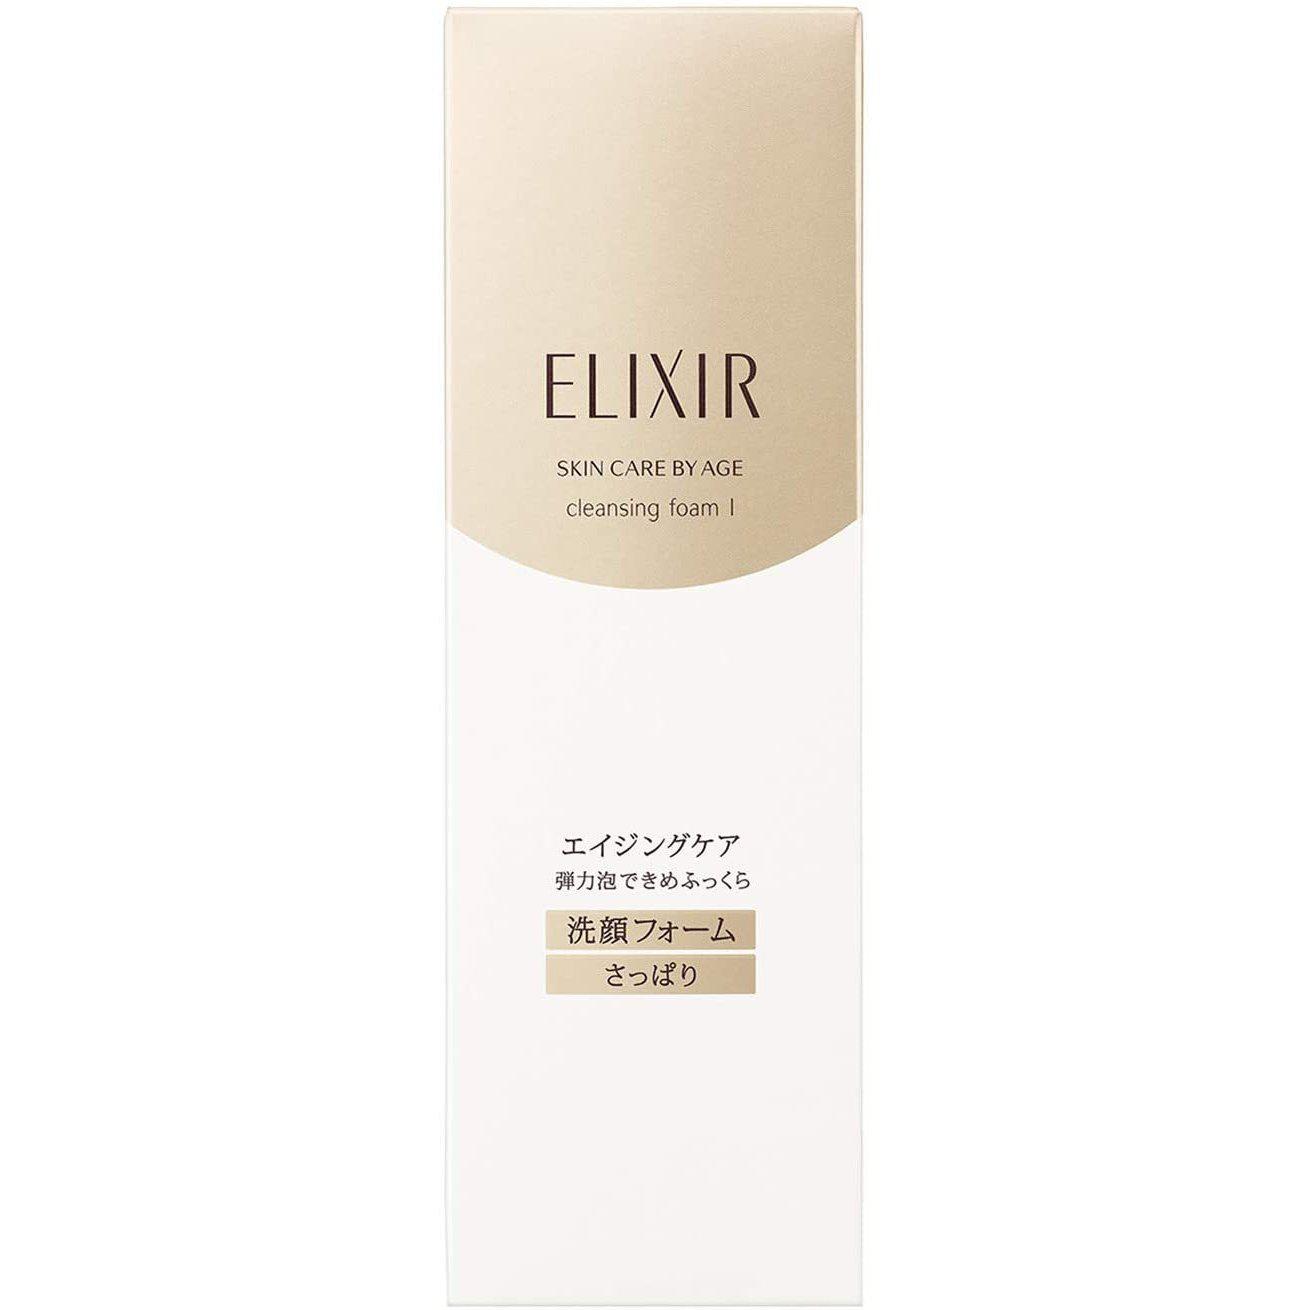 Shiseido Elixir Cleansing Foam I Light 145g